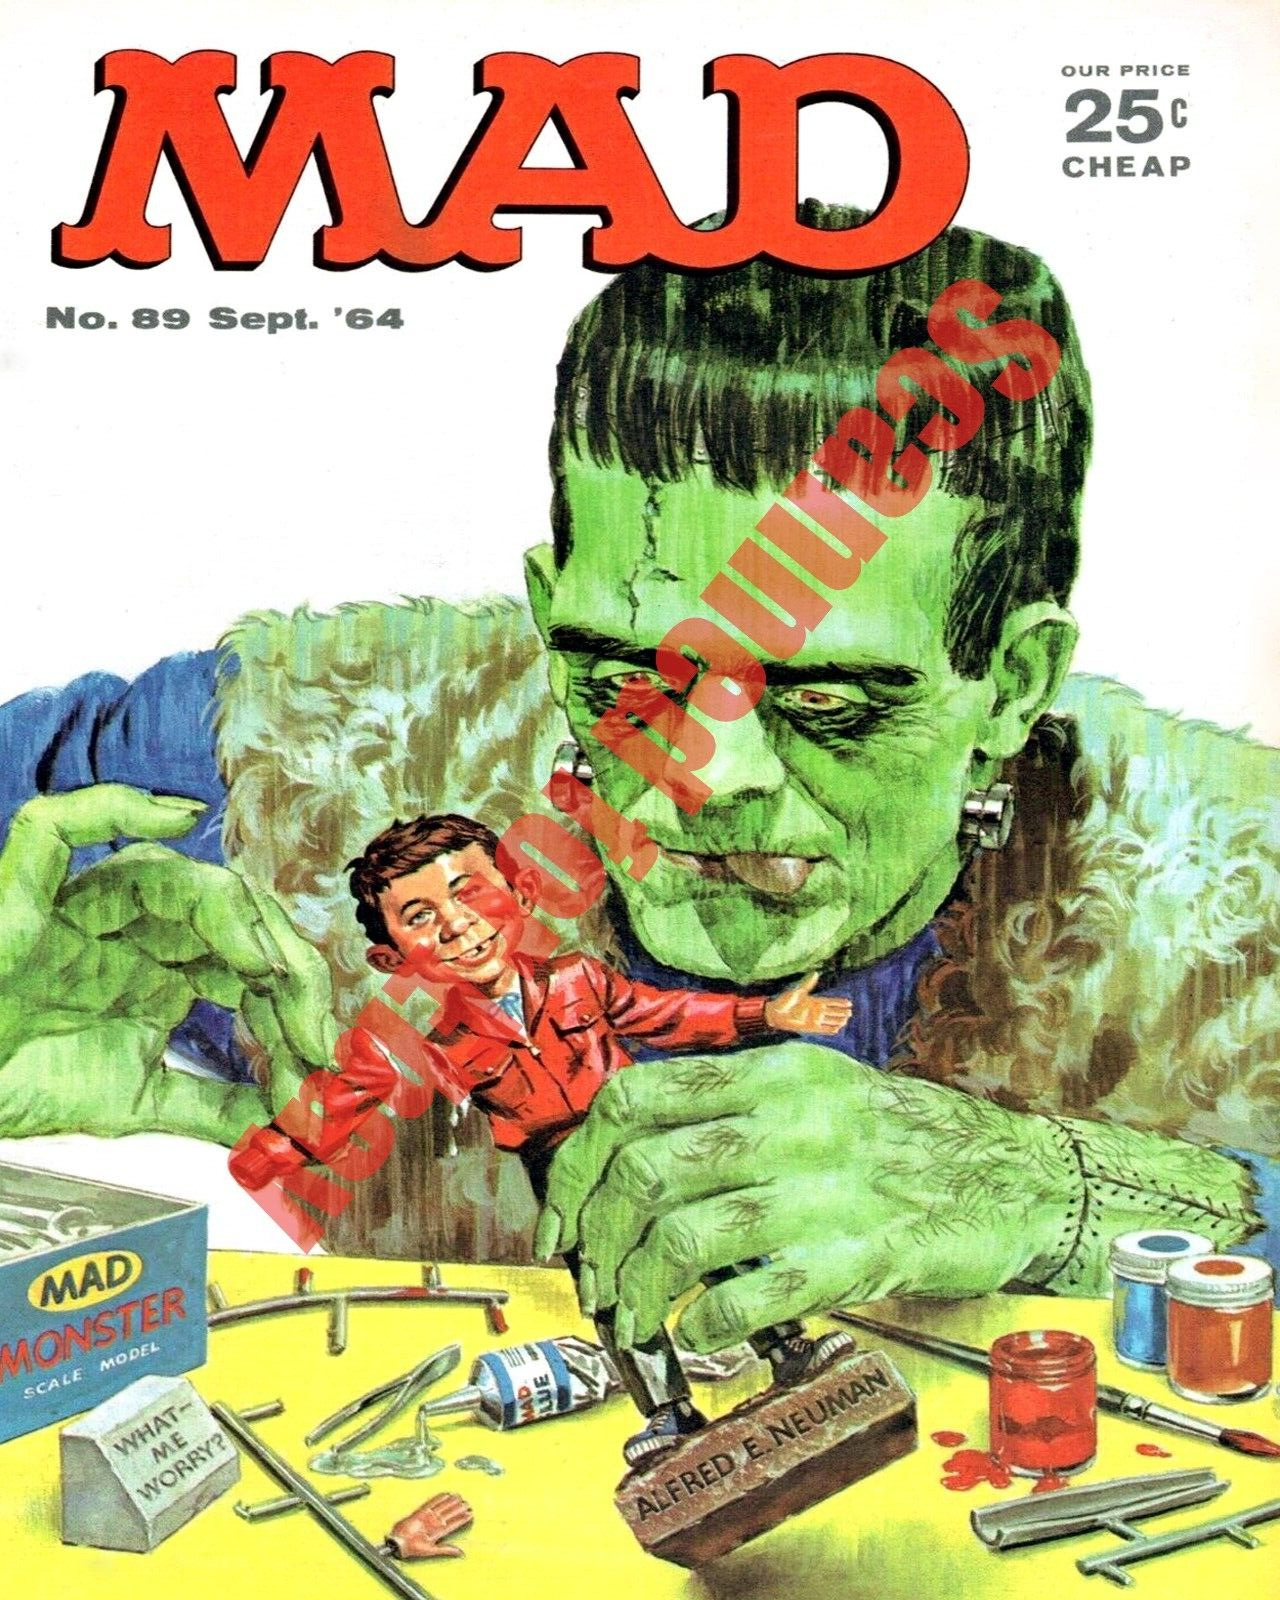 Circa 1964 Mad Magazine Issue 89 Frankenstein Halloween Cover Art 8x10 Photo